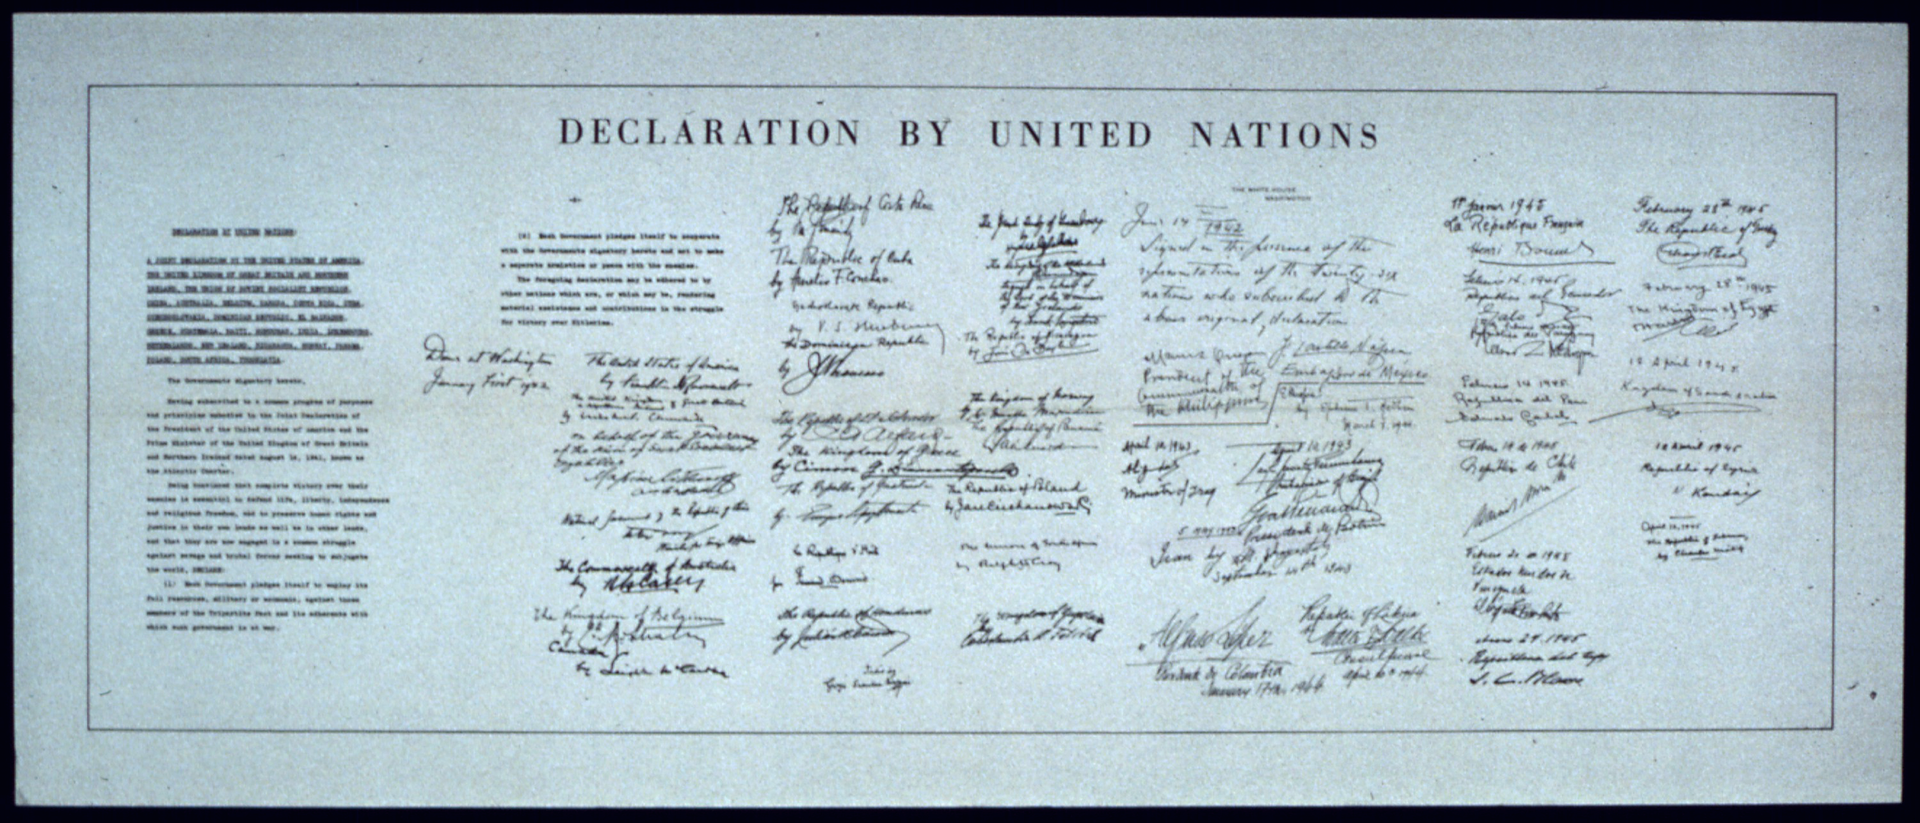 Ilustracja przedstawia duży papierowy dokument. To biało-czarne zdjęcie karty Narodów Zjednoczonych. Na górze dokumentu poziomy napis w języku angielskim: Declaration by United Nations. Po lewej stronie treść deklaracji w dwóch kolumnach. Na prawo od treści 26 podpisów wykonanych przez przedstawicieli państw członków założycieli. Podpisy ułożone są w 7 kolumnach. Kolumny jedna obok drugiej.